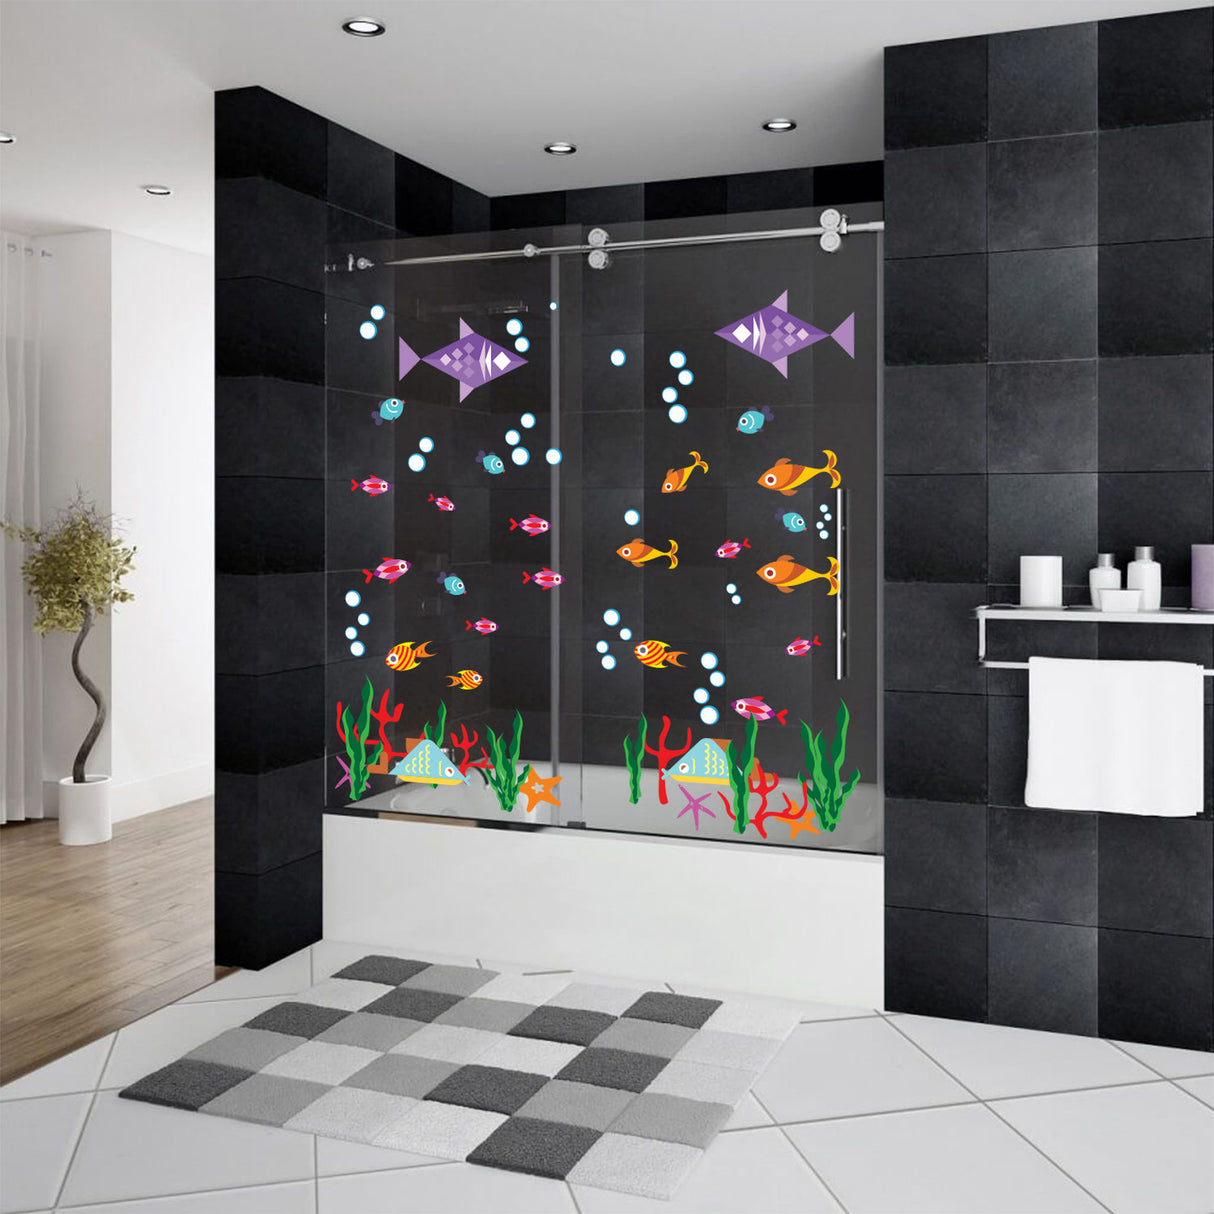 Bathroom Decor Door Vinyl Decals - Funny Bath Room Art For Shower Doors